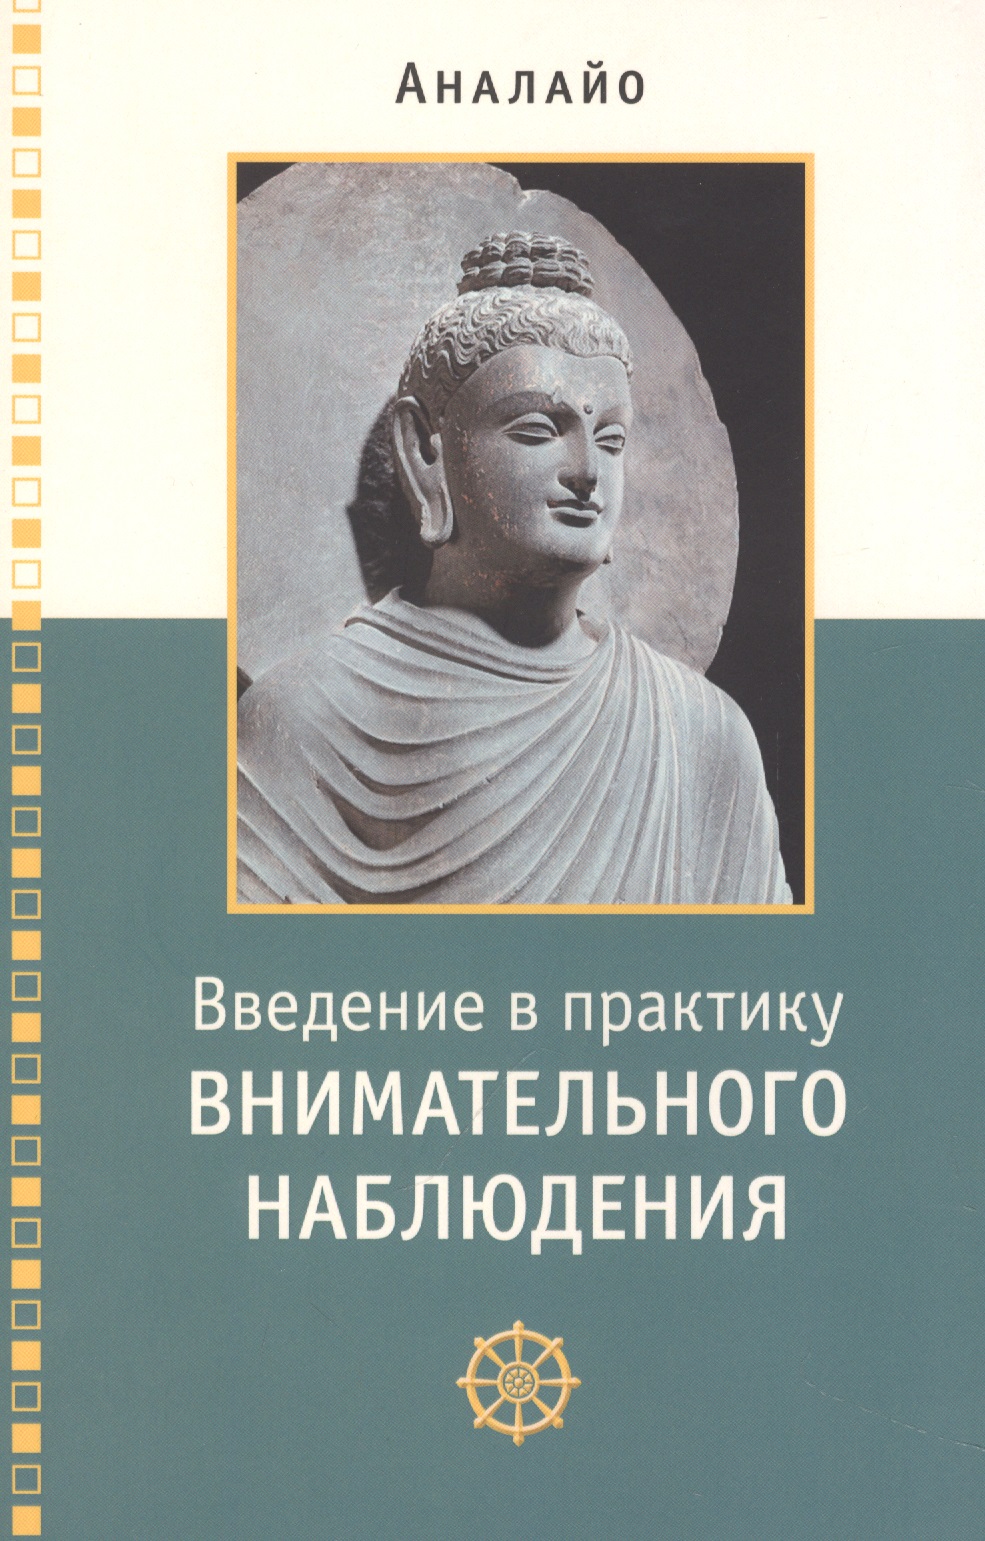 Аналайо Бхиккху Введение в практику внимательного наблюдения Буддийское обоснование и практические занятия